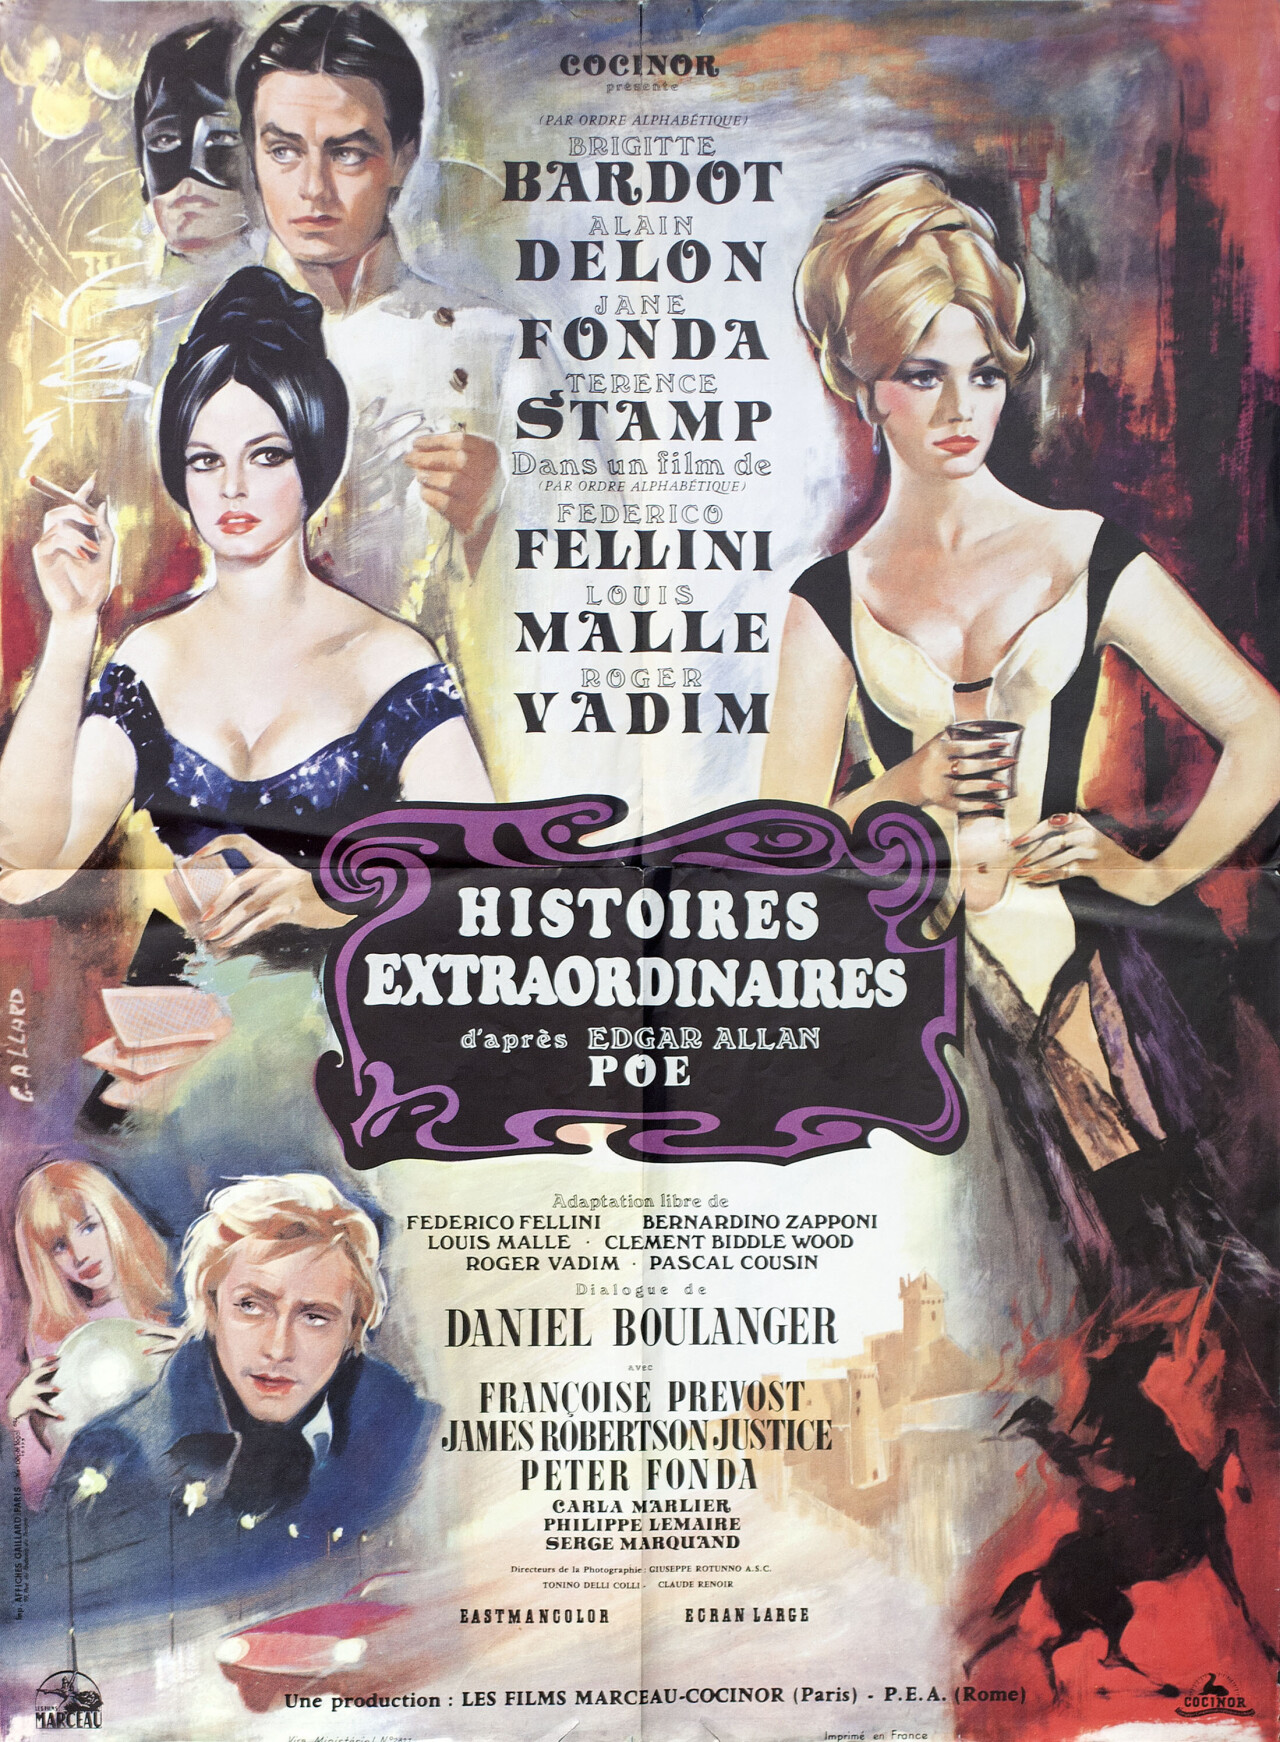 Духи мертвых, режиссёр Федерико Феллини, французский постер к фильму, автор Гилберт Аллард (ужасы, 1968 год)